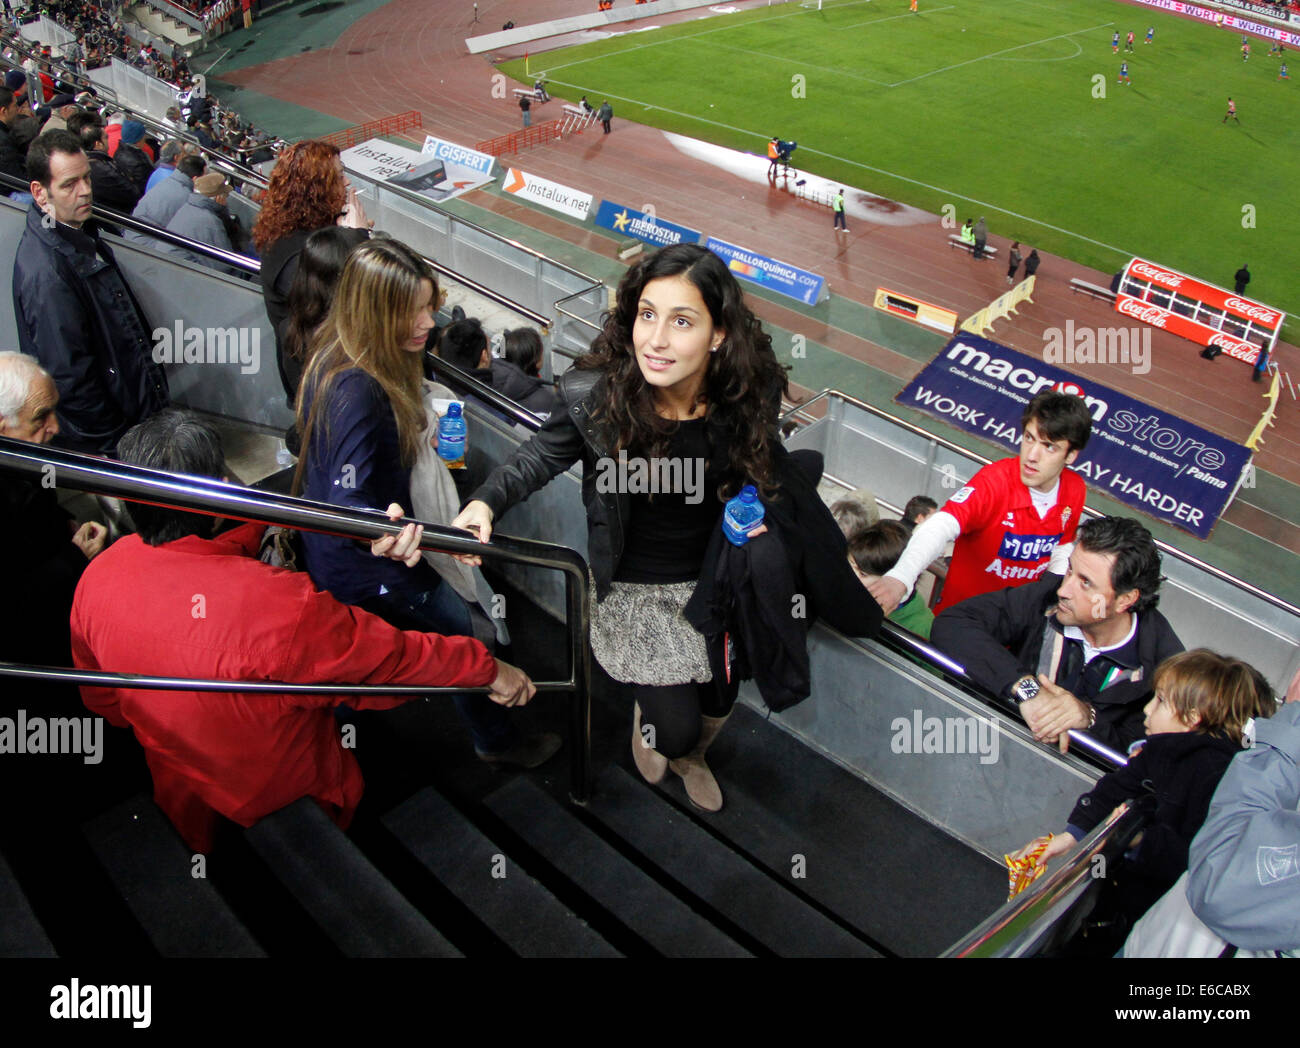 Ragazza e la sorella del giocatore di tennis Rafa Nadal arriva a guardare una partita di calcio a Maiorca, SPAGNA Foto Stock